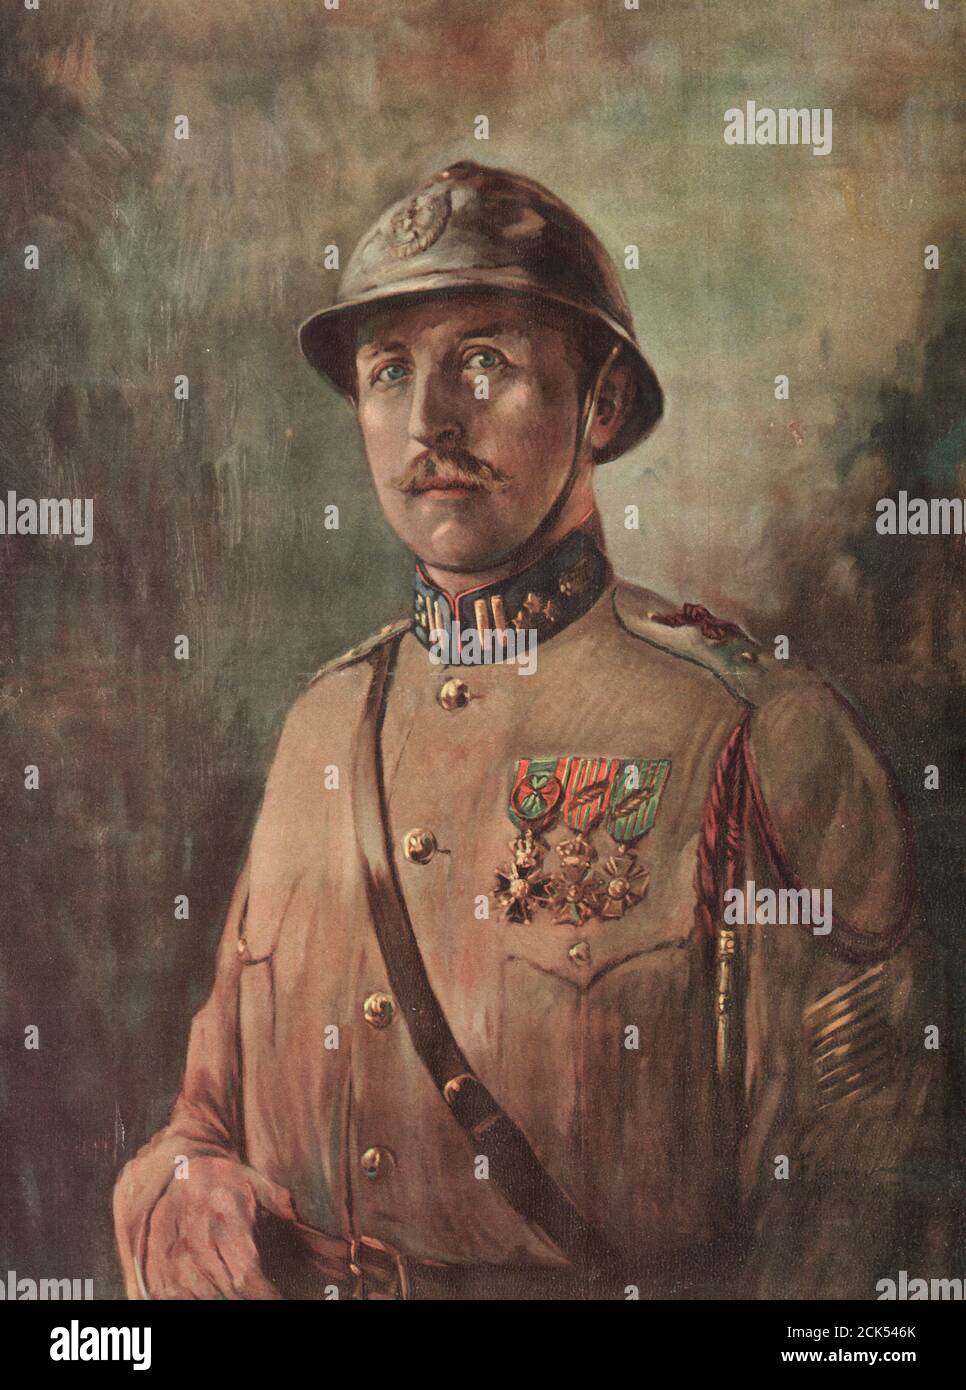 Seine Majestät, Albert, König der Belgier - "bevor sie meine Armee vernichten, müssen sie über meine Leiche treten" - August 1914, als Belgien von den Deutschen überfallen wurde Stockfoto